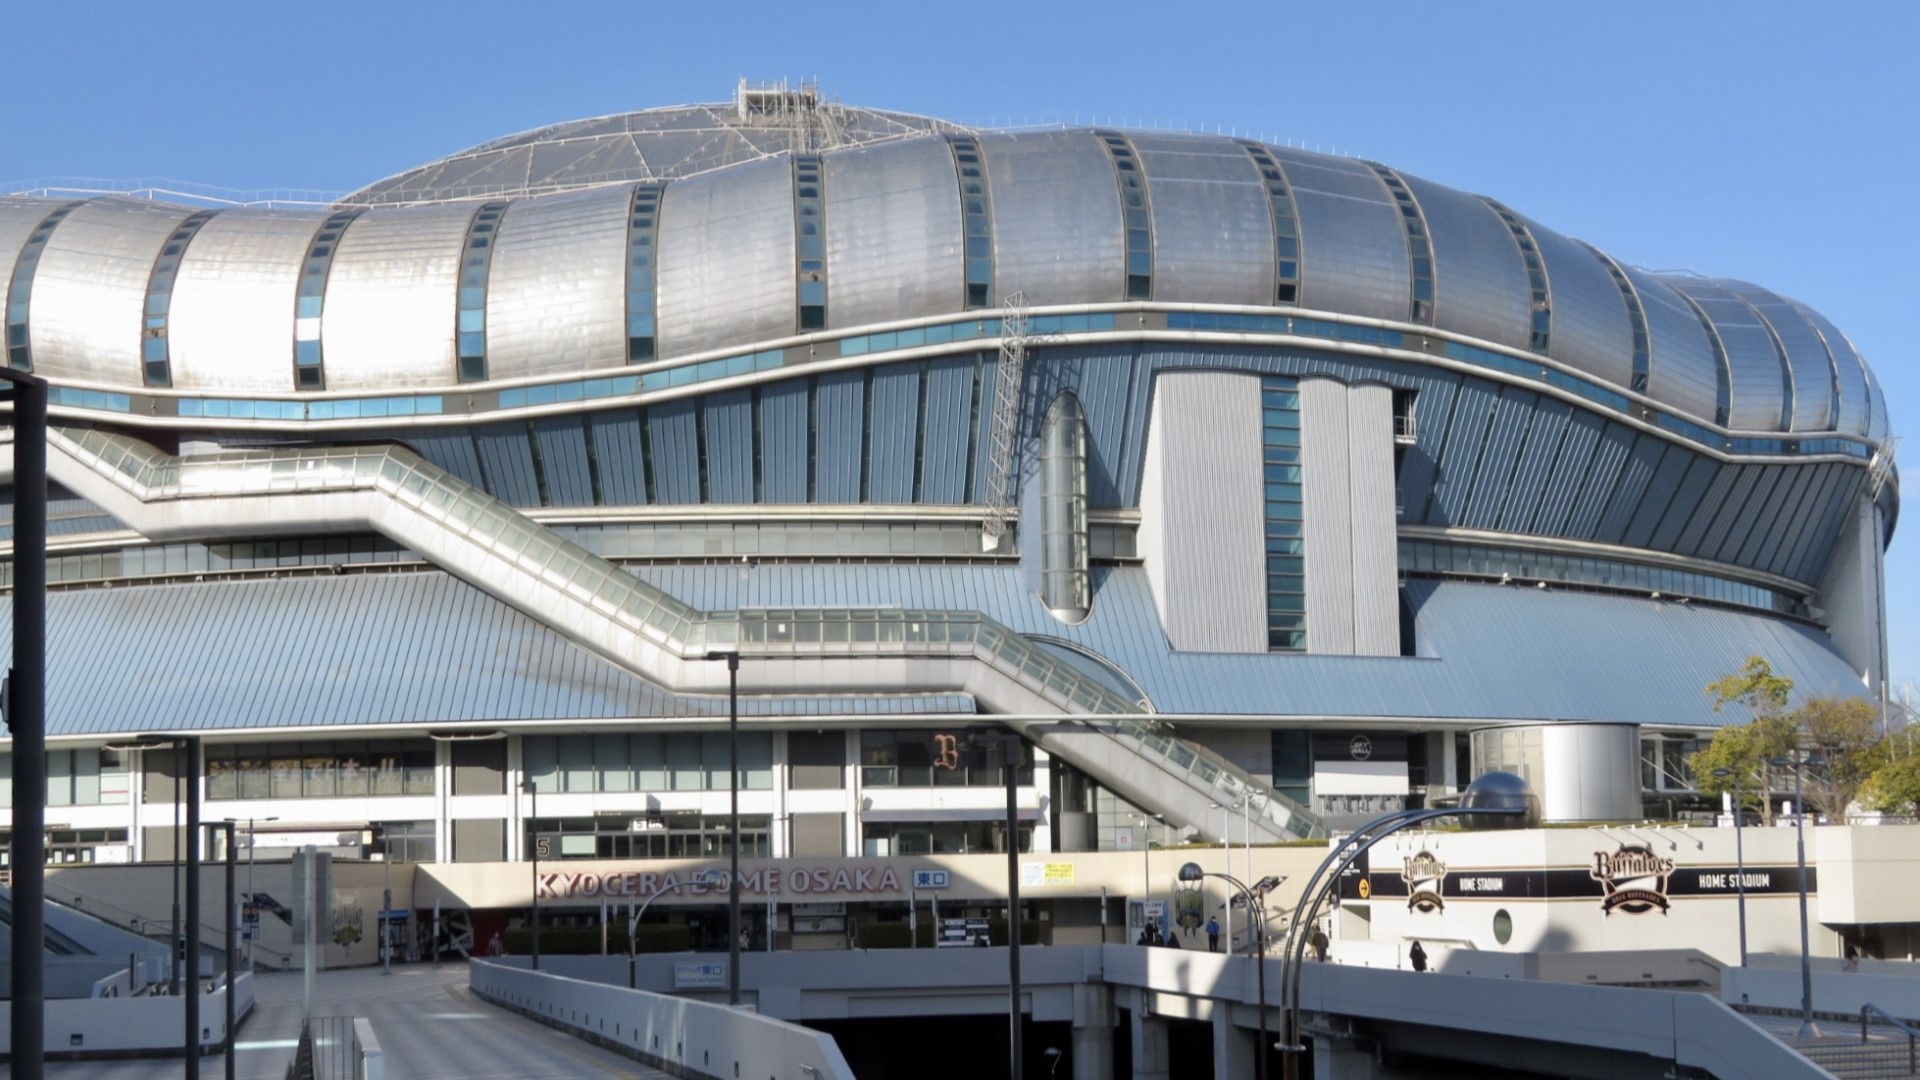 【京セラドーム大阪】ホテルより地下鉄約30分。プロ野球やコンサートに使用されるドーム型スタジアム。